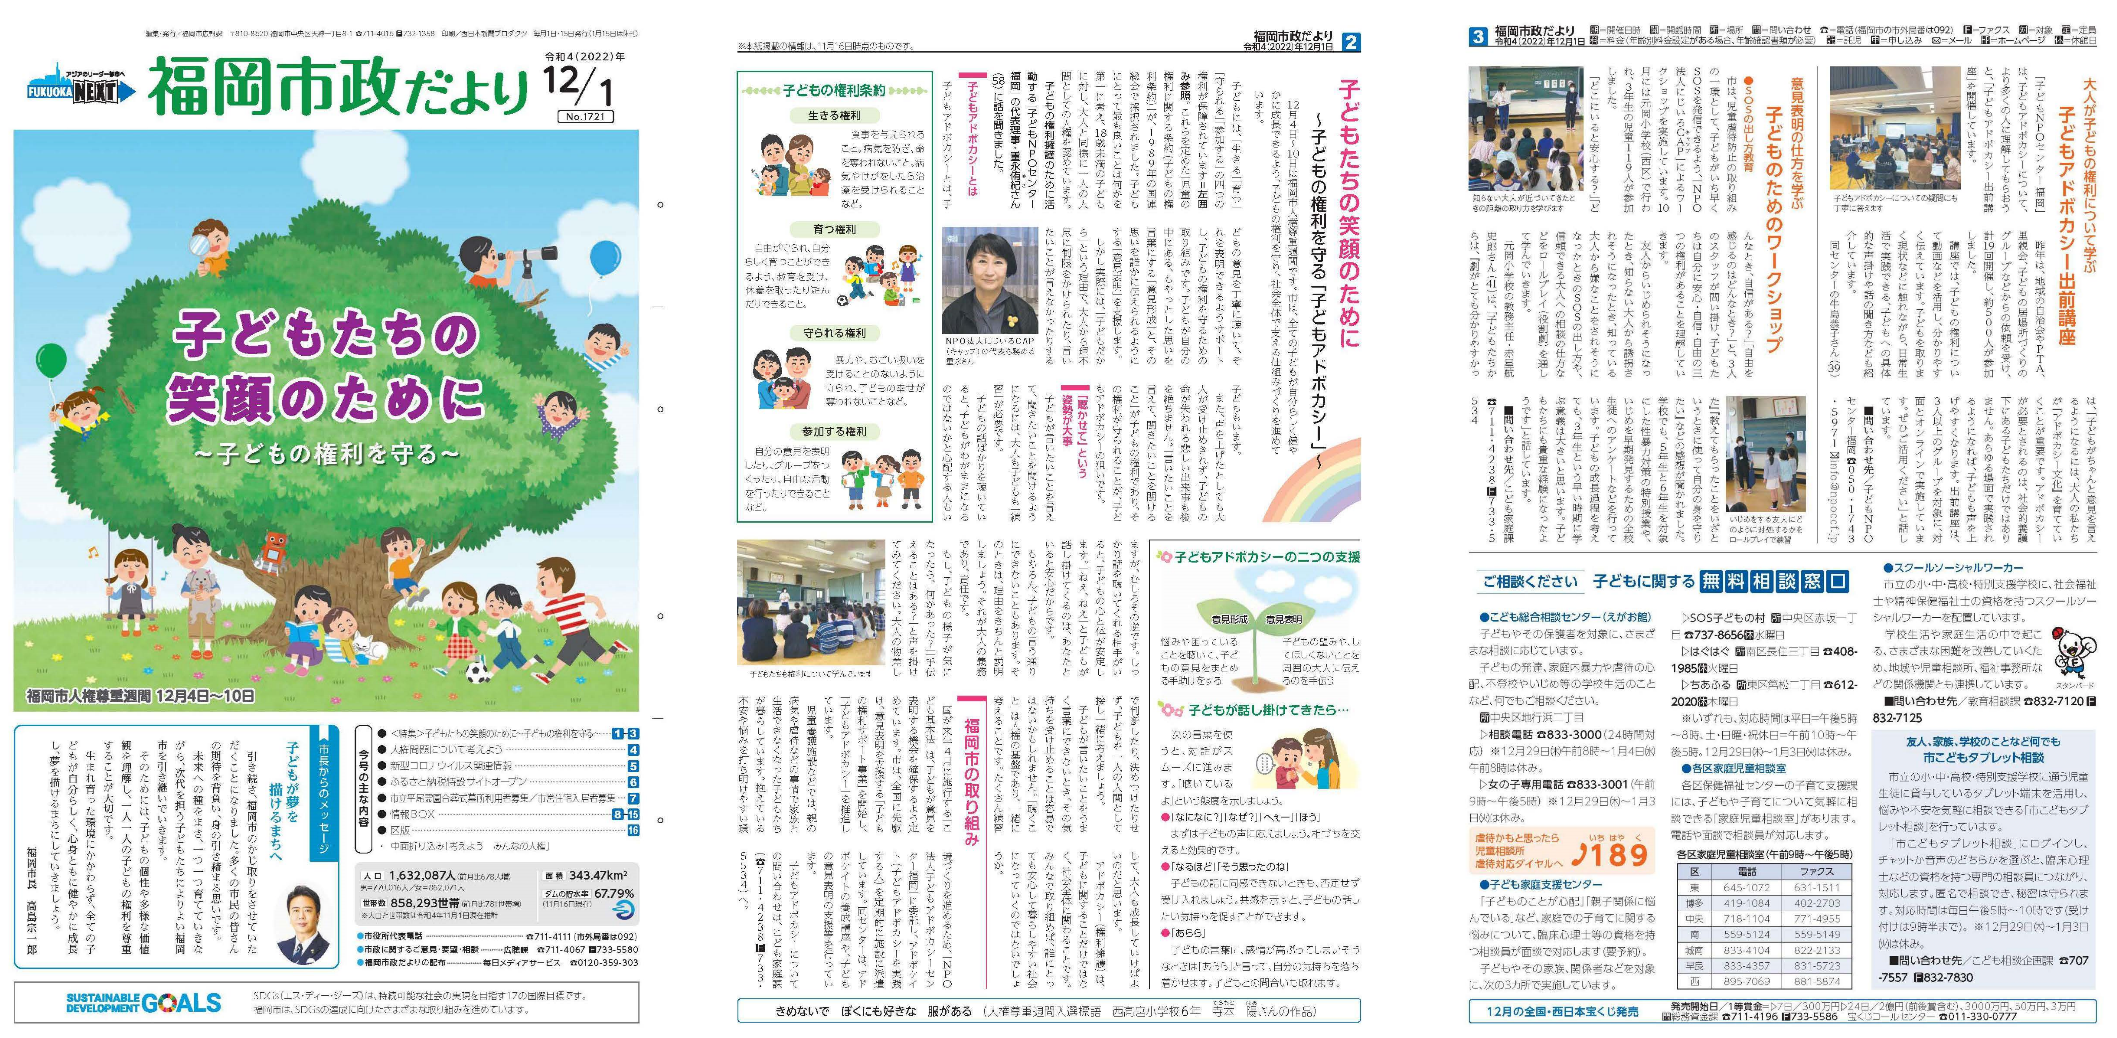 福岡市政だより2022年12月1日号の表紙から3面の紙面画像